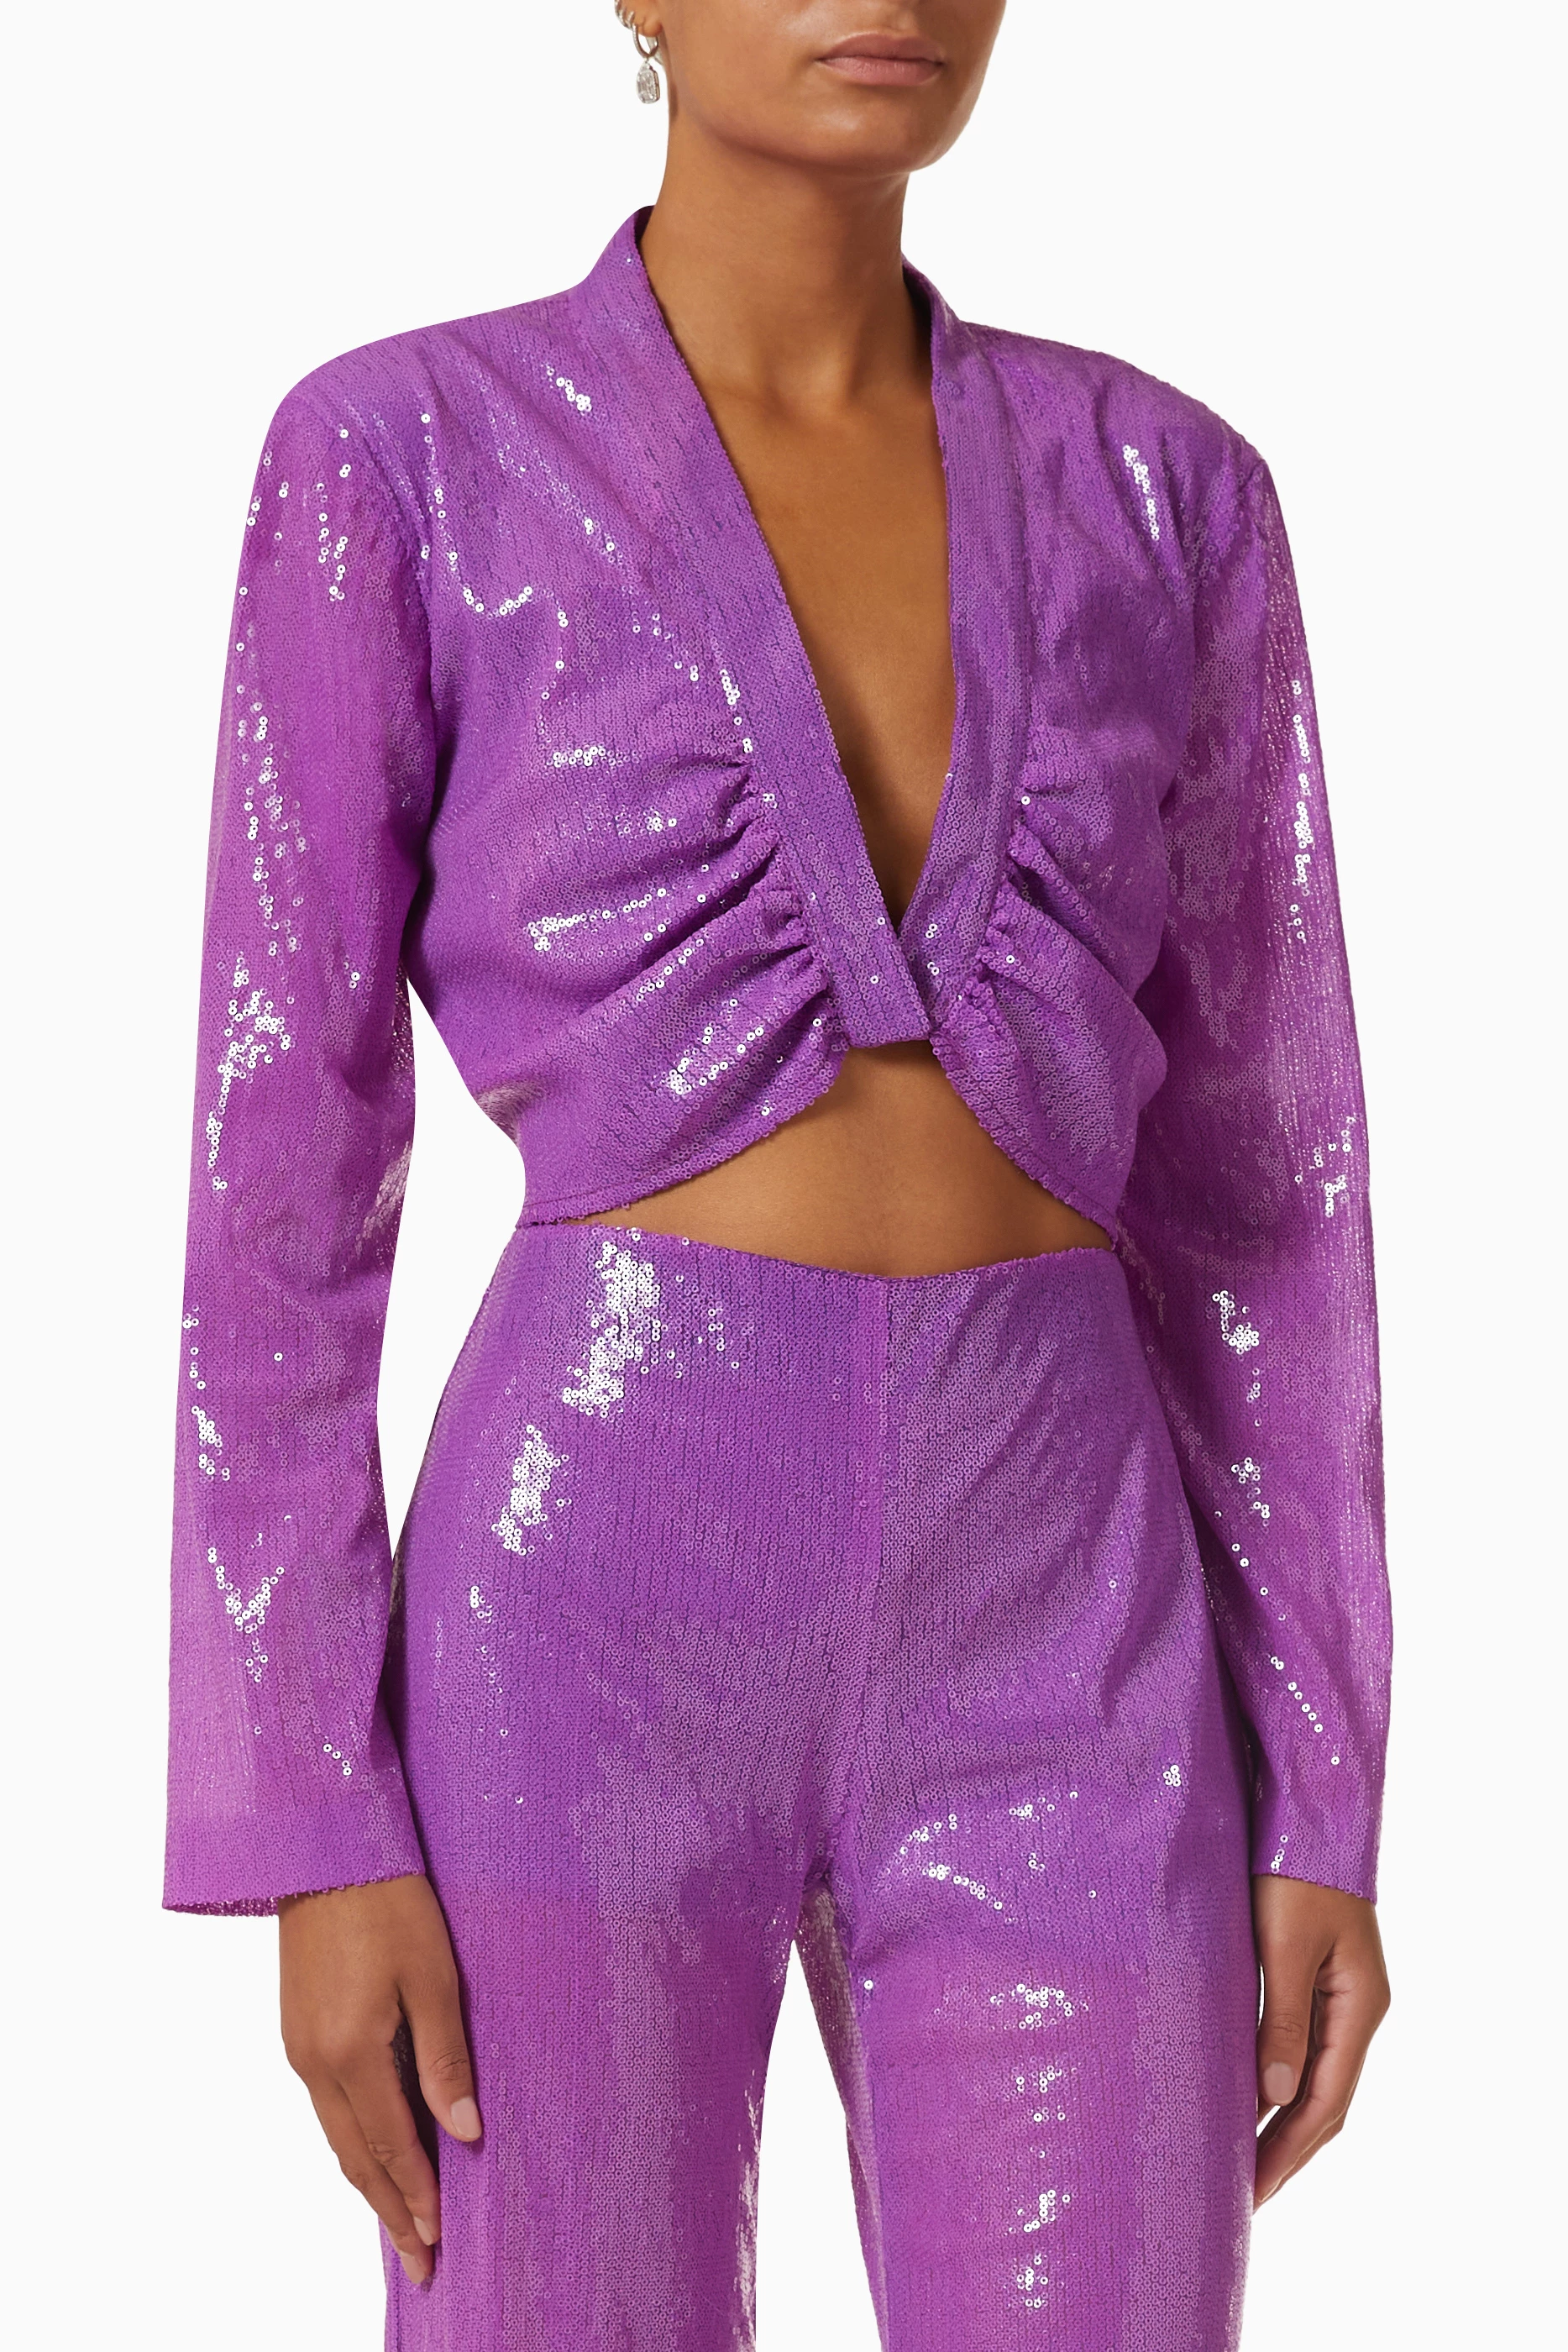 Sequined Crop Top - Light purple/sequins - Ladies